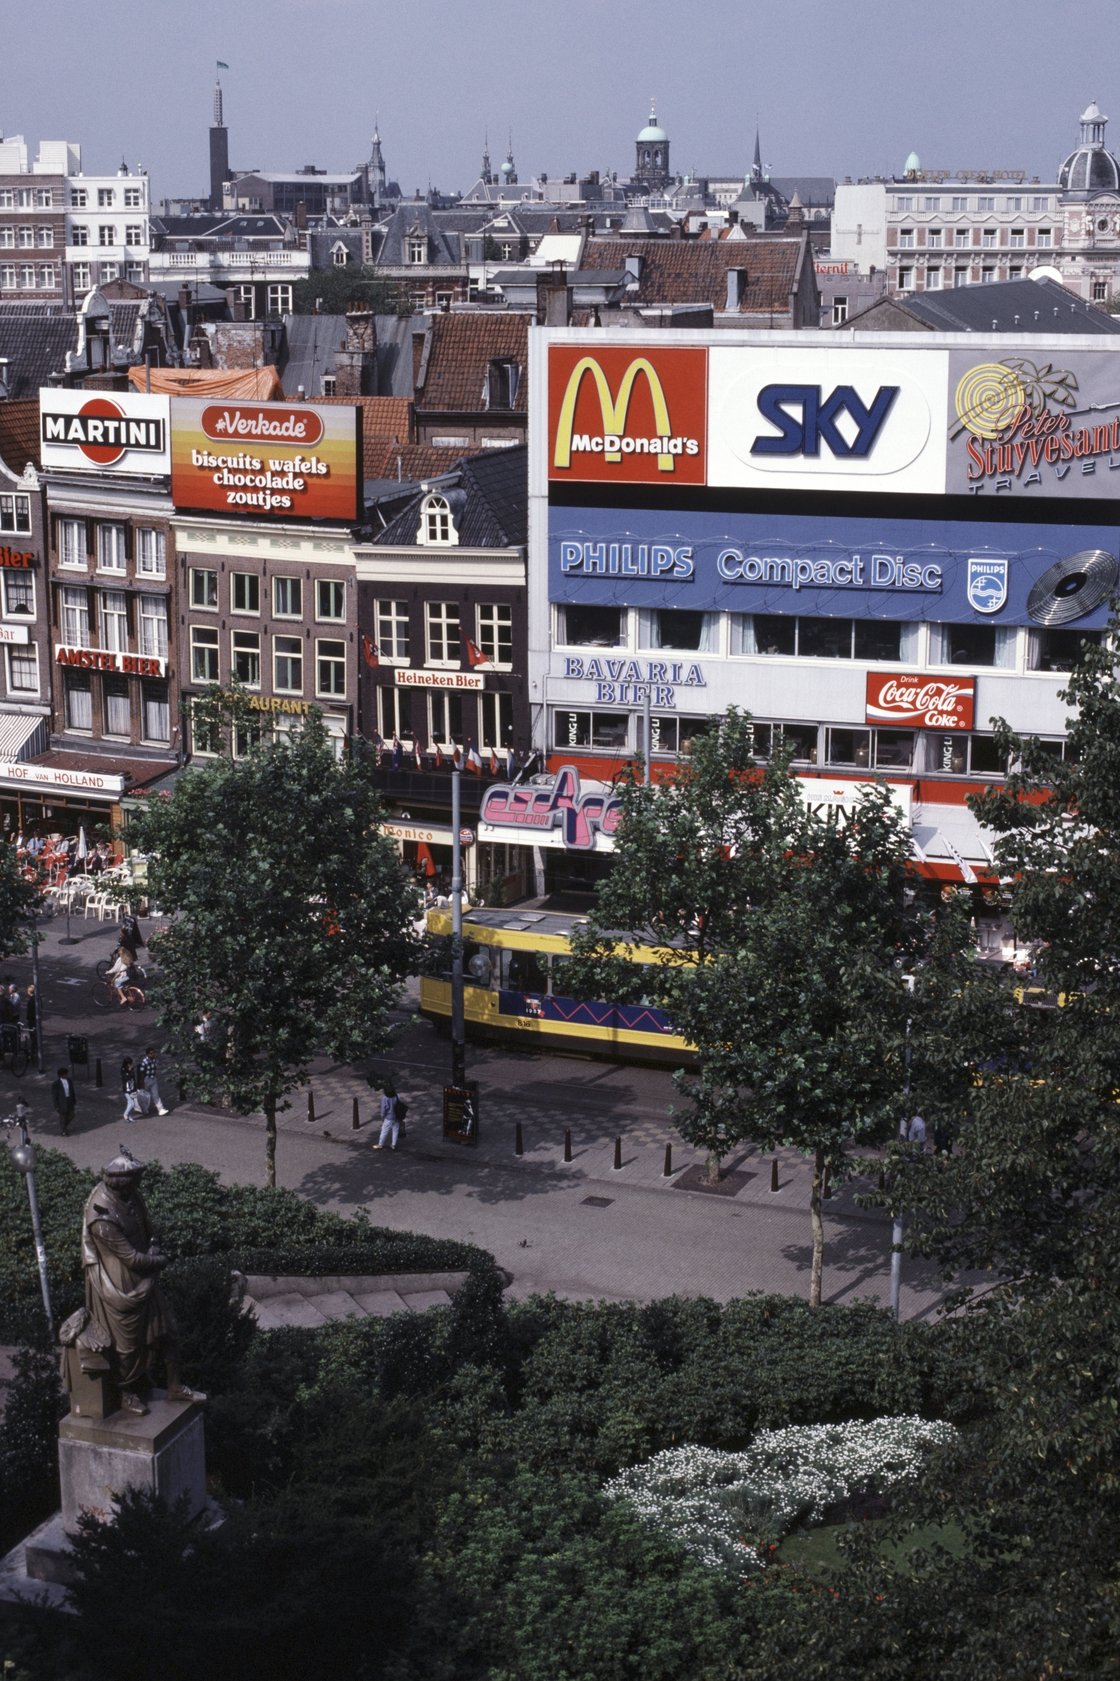 Image - Amsterdam in September 1987